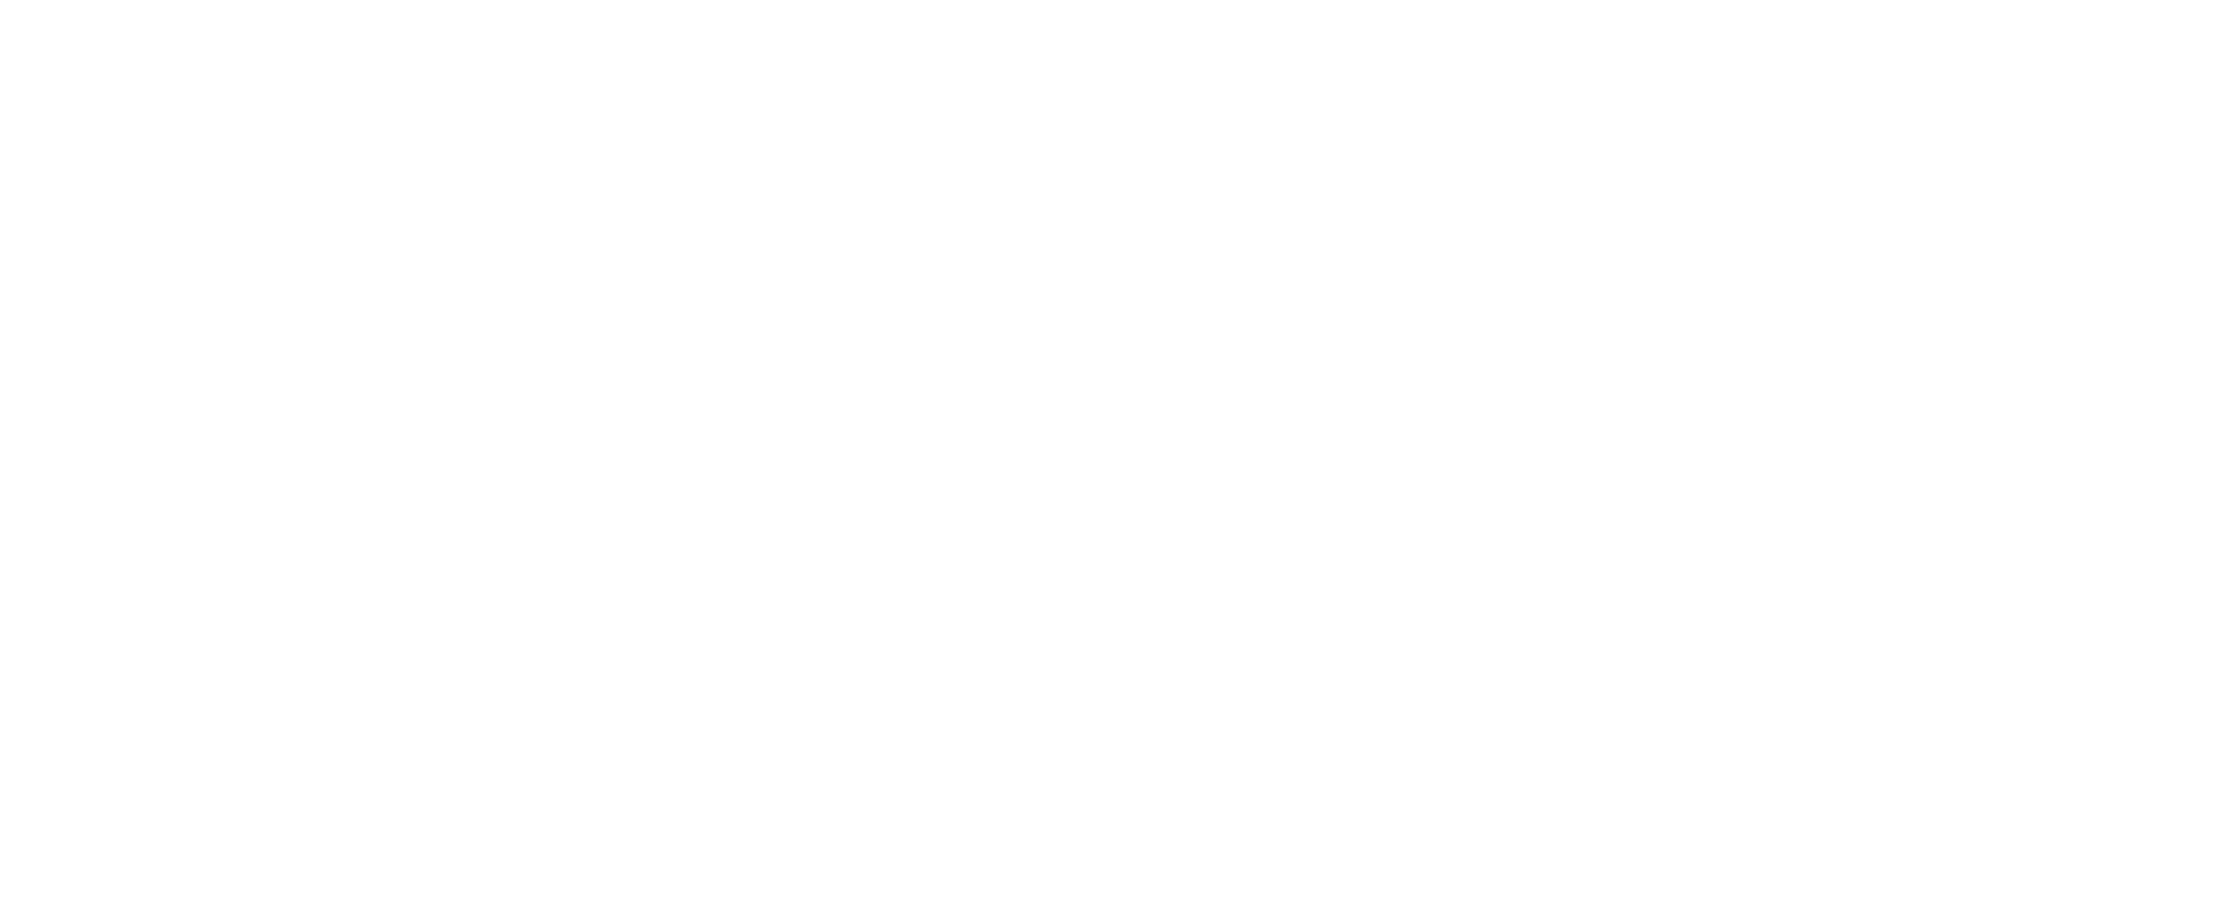 Margaritaville Lake Resort, Lake Conroe - Houston Logo